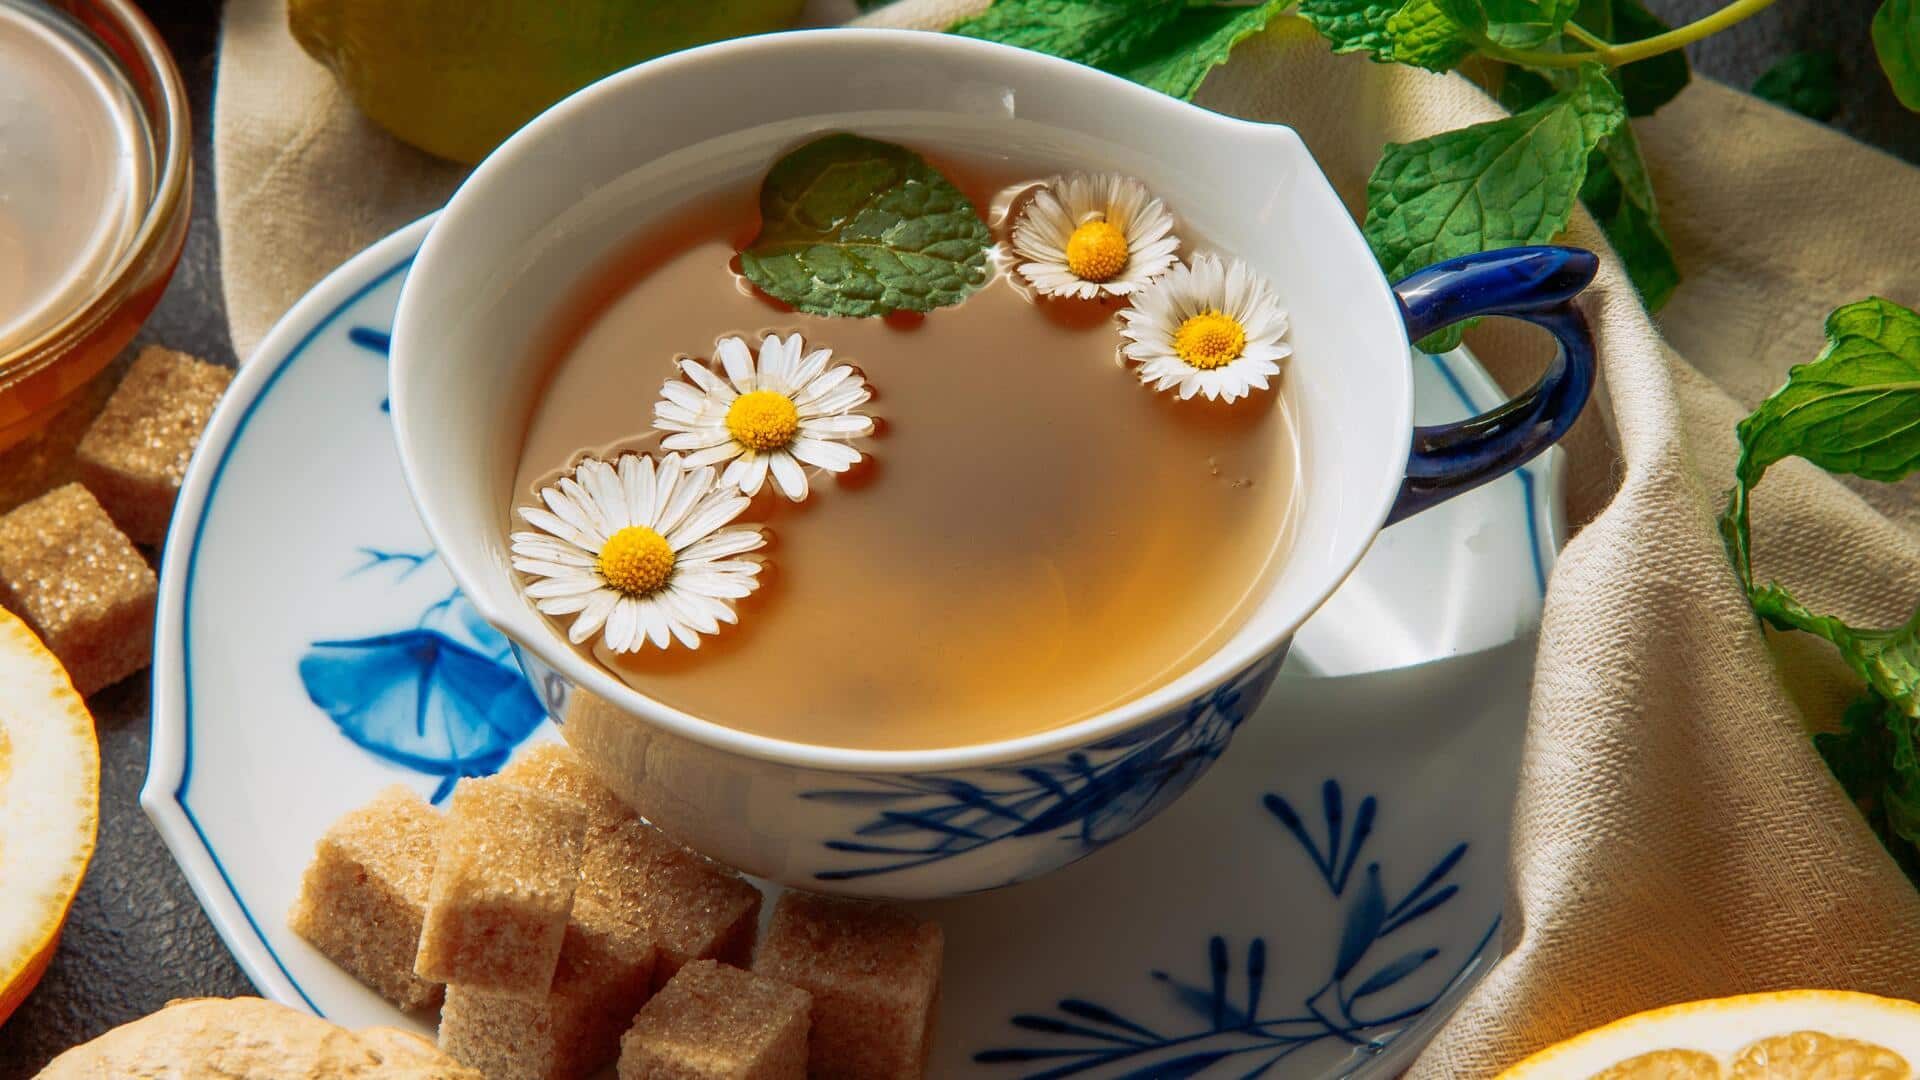 कैमोमाइल चाय का करें रोजाना सेवन, मिलेंगे ये 5 बड़े स्वास्थ्य लाभ